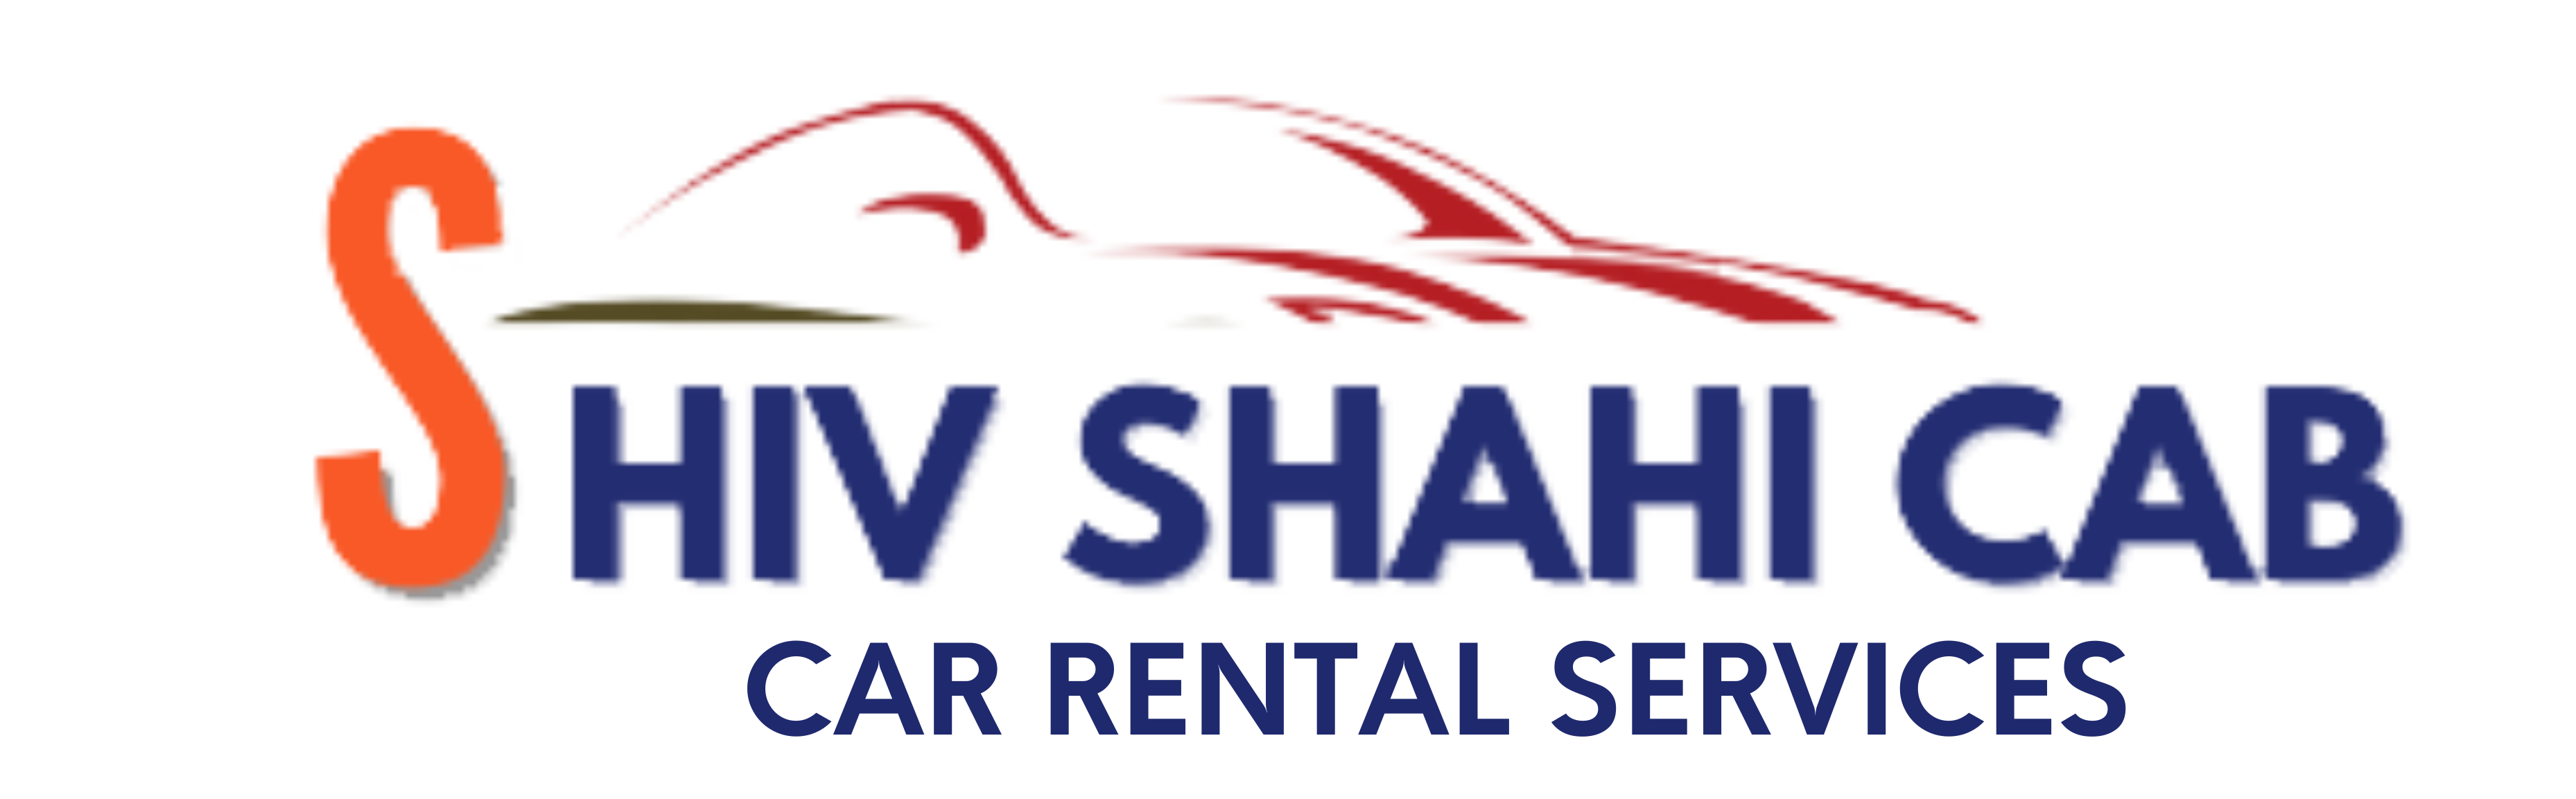 shiv shahi cab services | car rentals in aurangabad